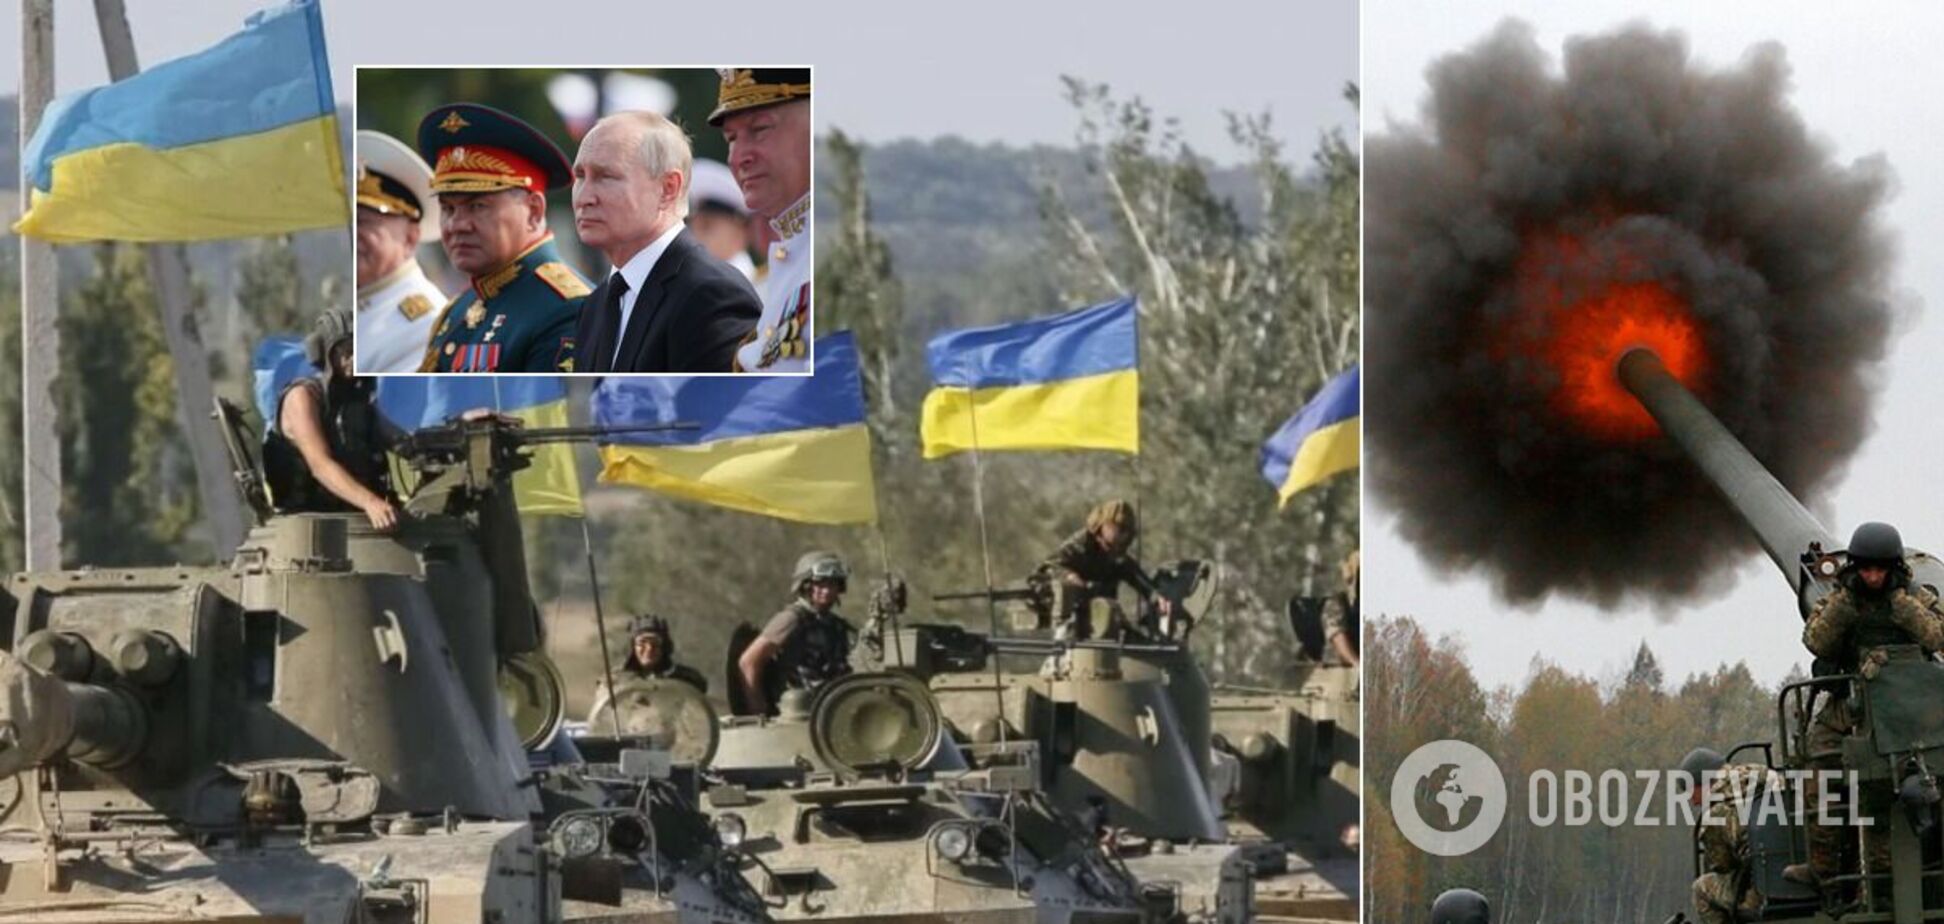 Селезнев: есть один путь к победе на Донбассе, успокаивать агрессора нельзя